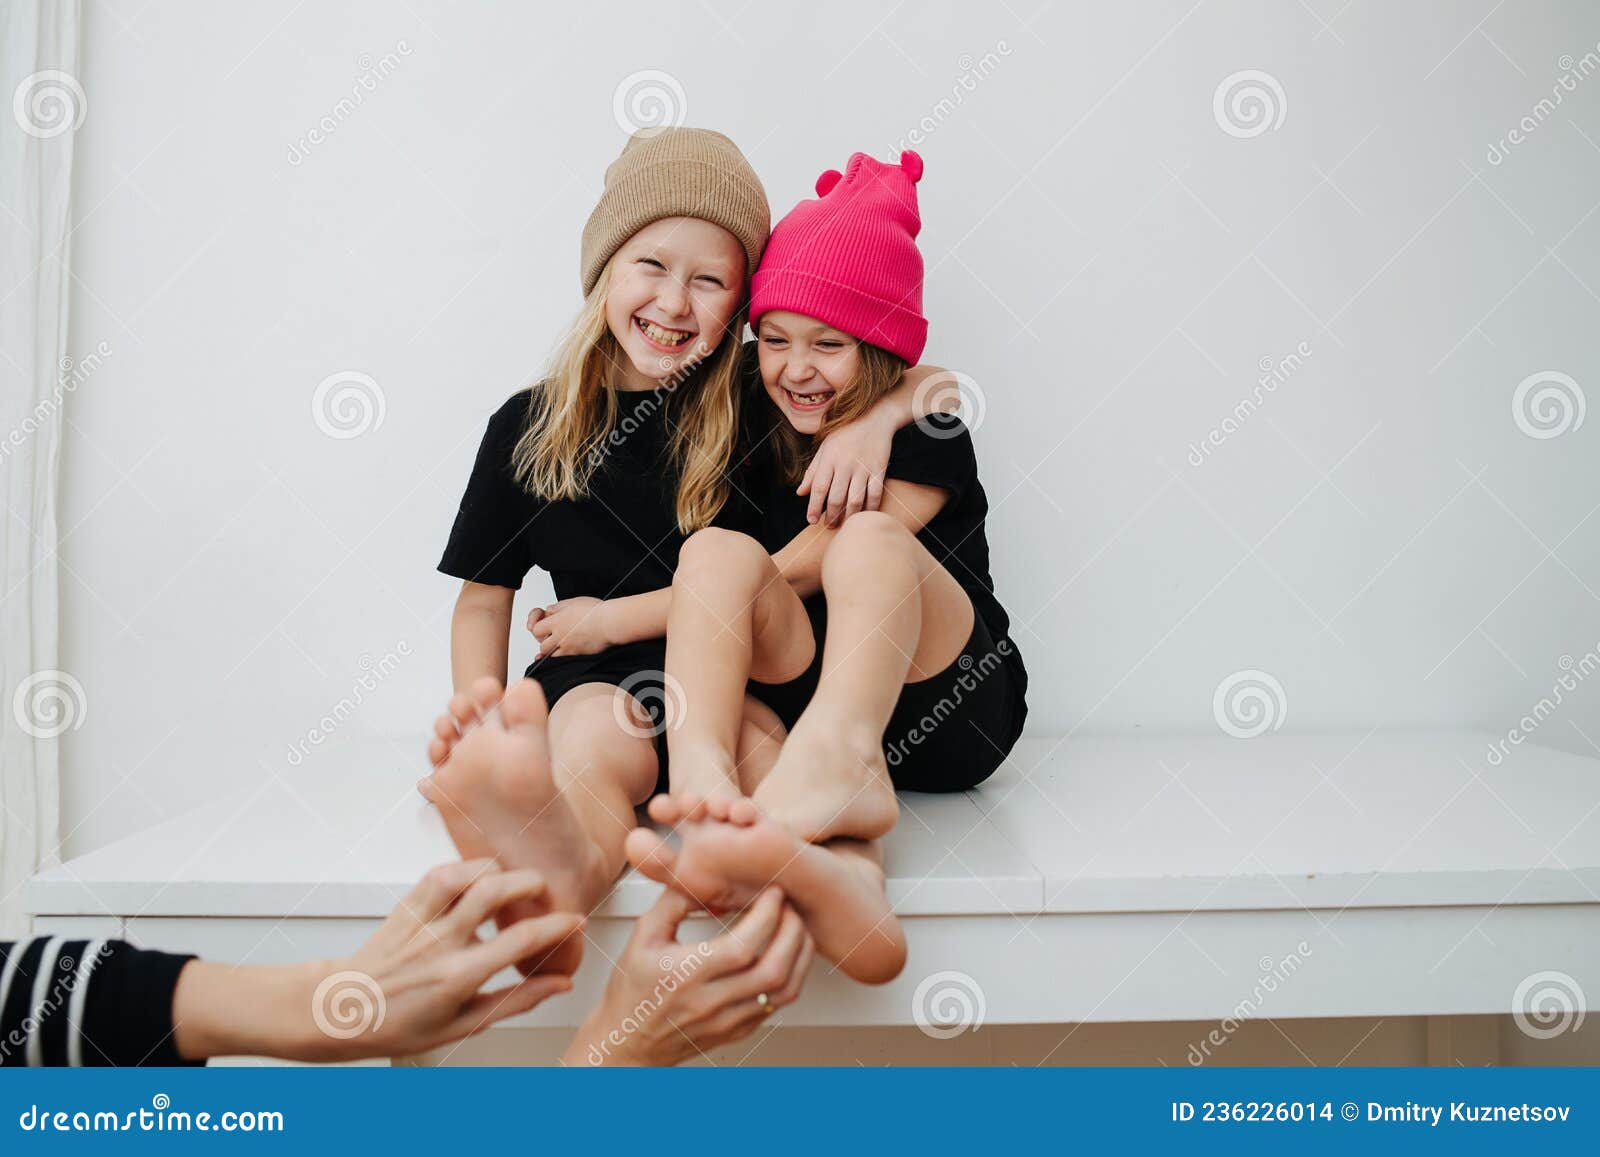 Tickling girl ml models